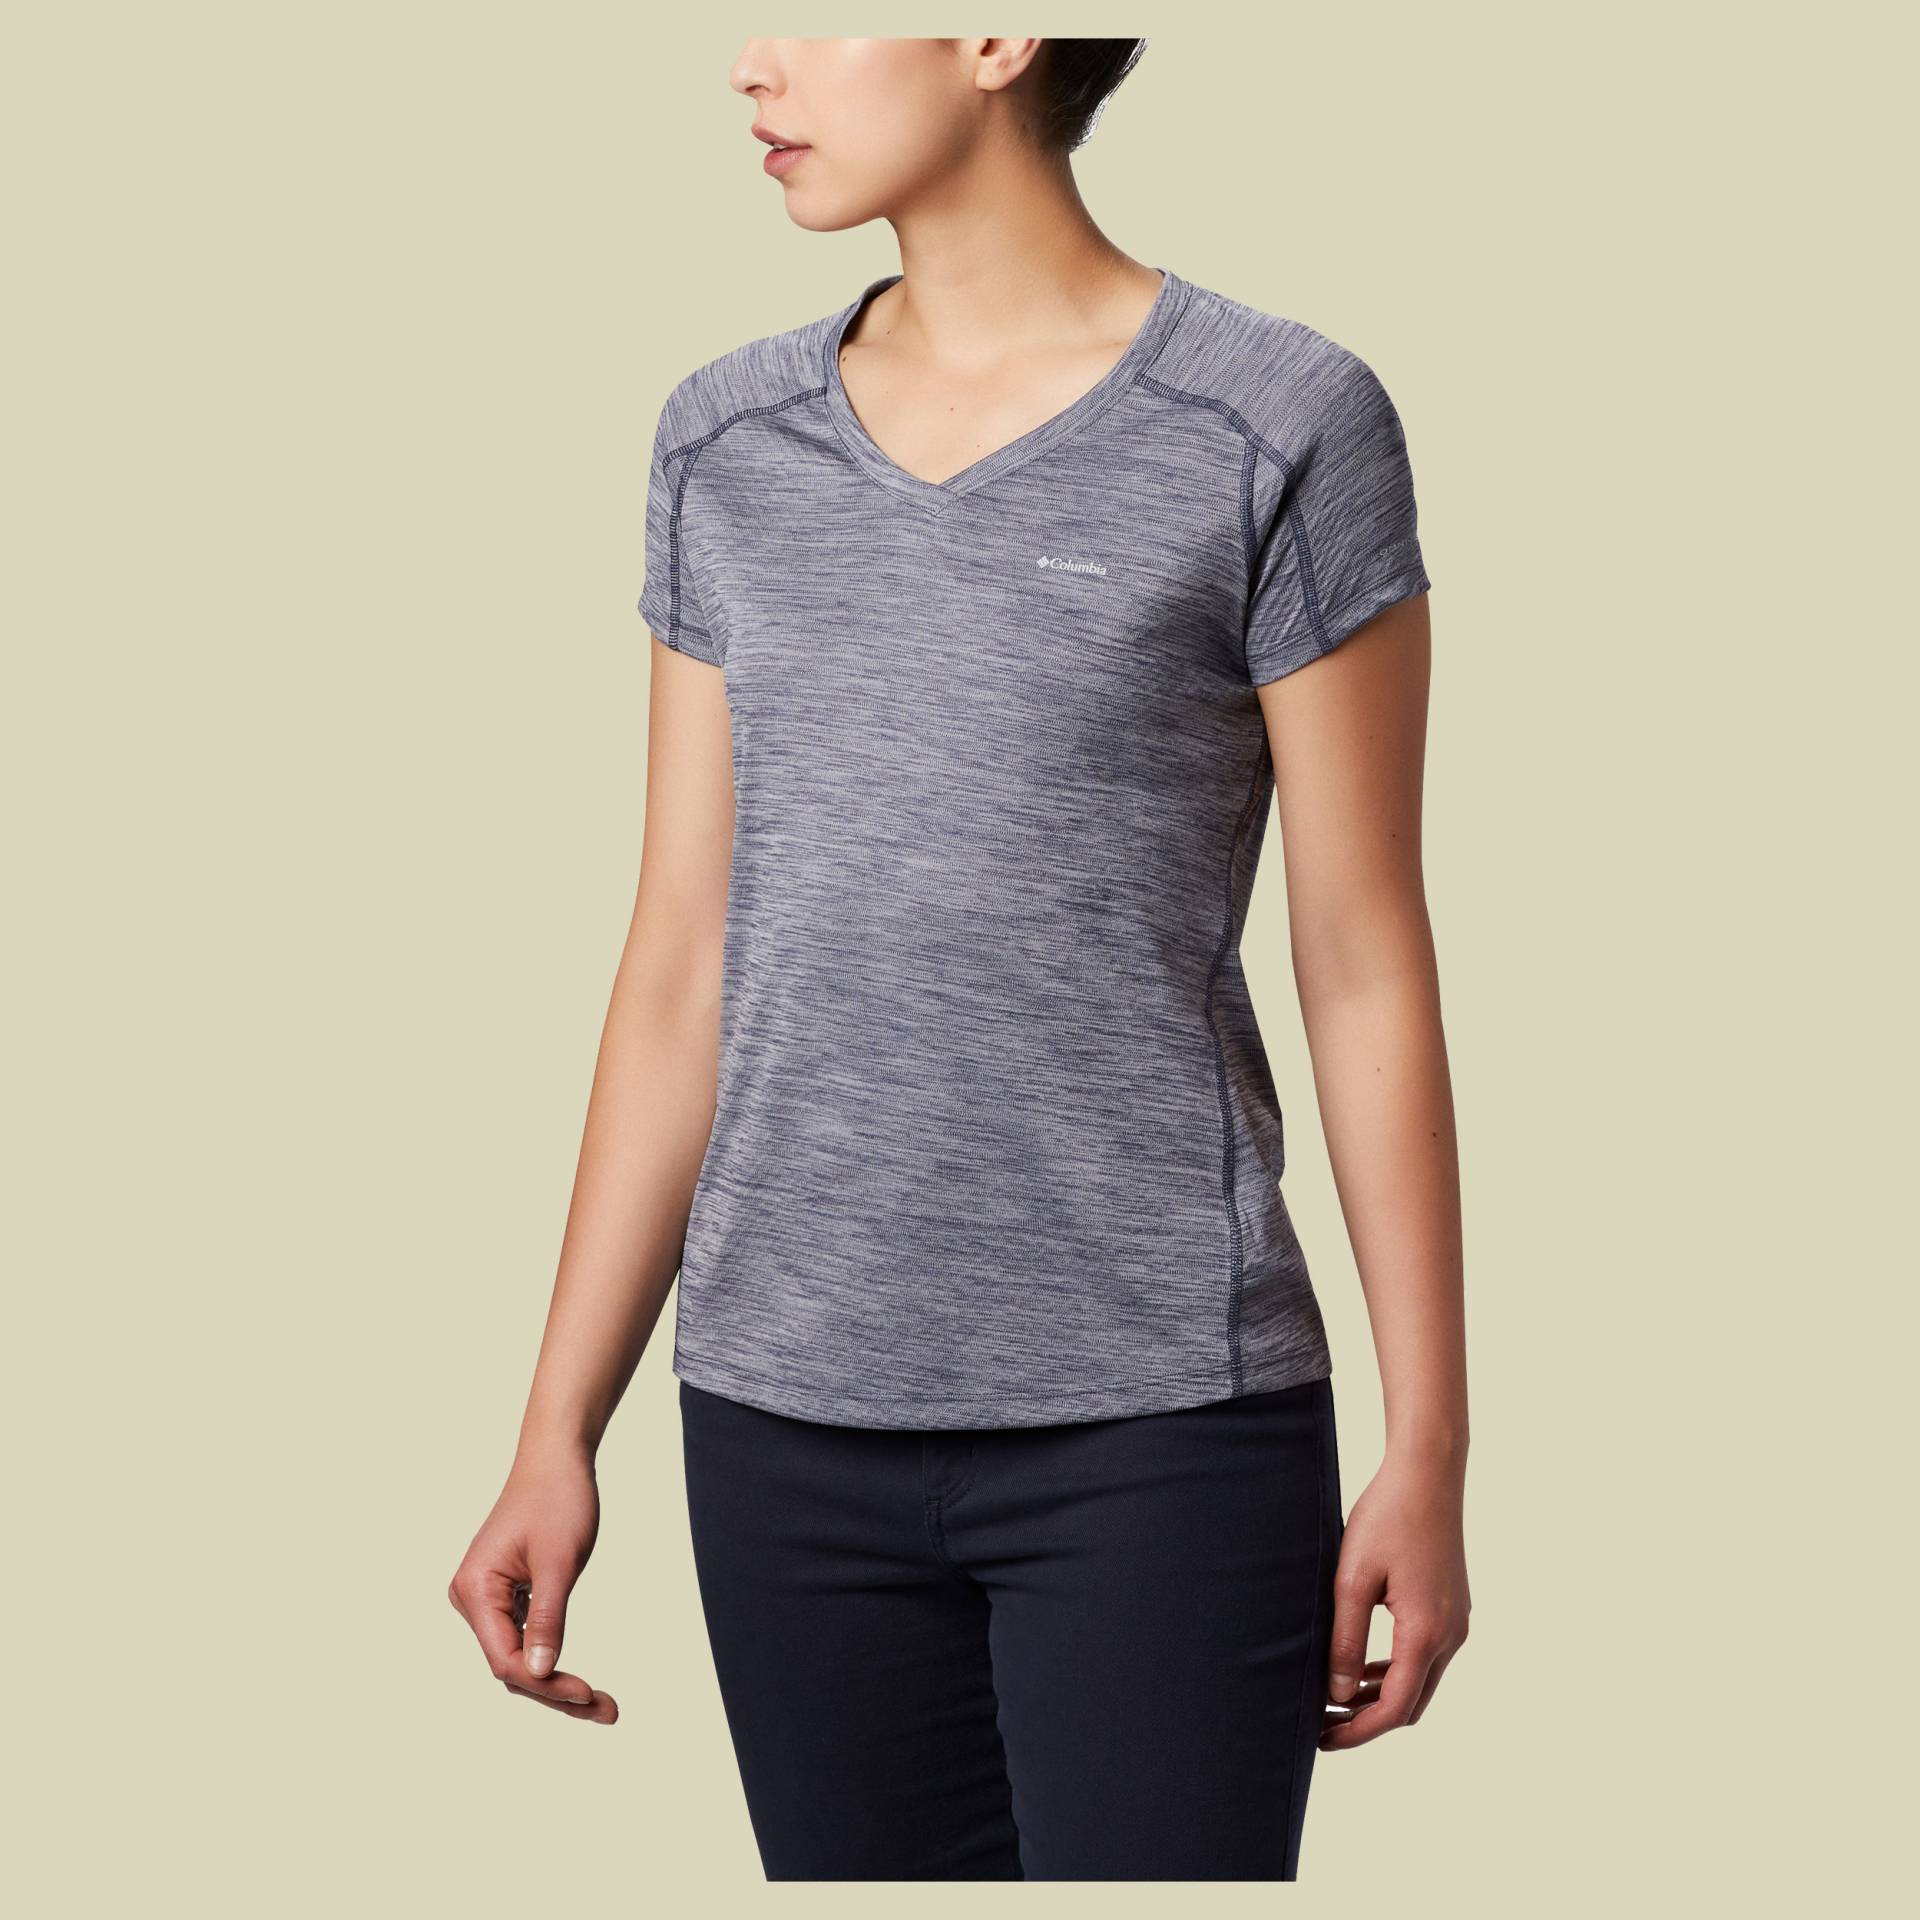 Zero Rules Short Sleeve Shirt Women Größe S Farbe nocturnal heather von Columbia